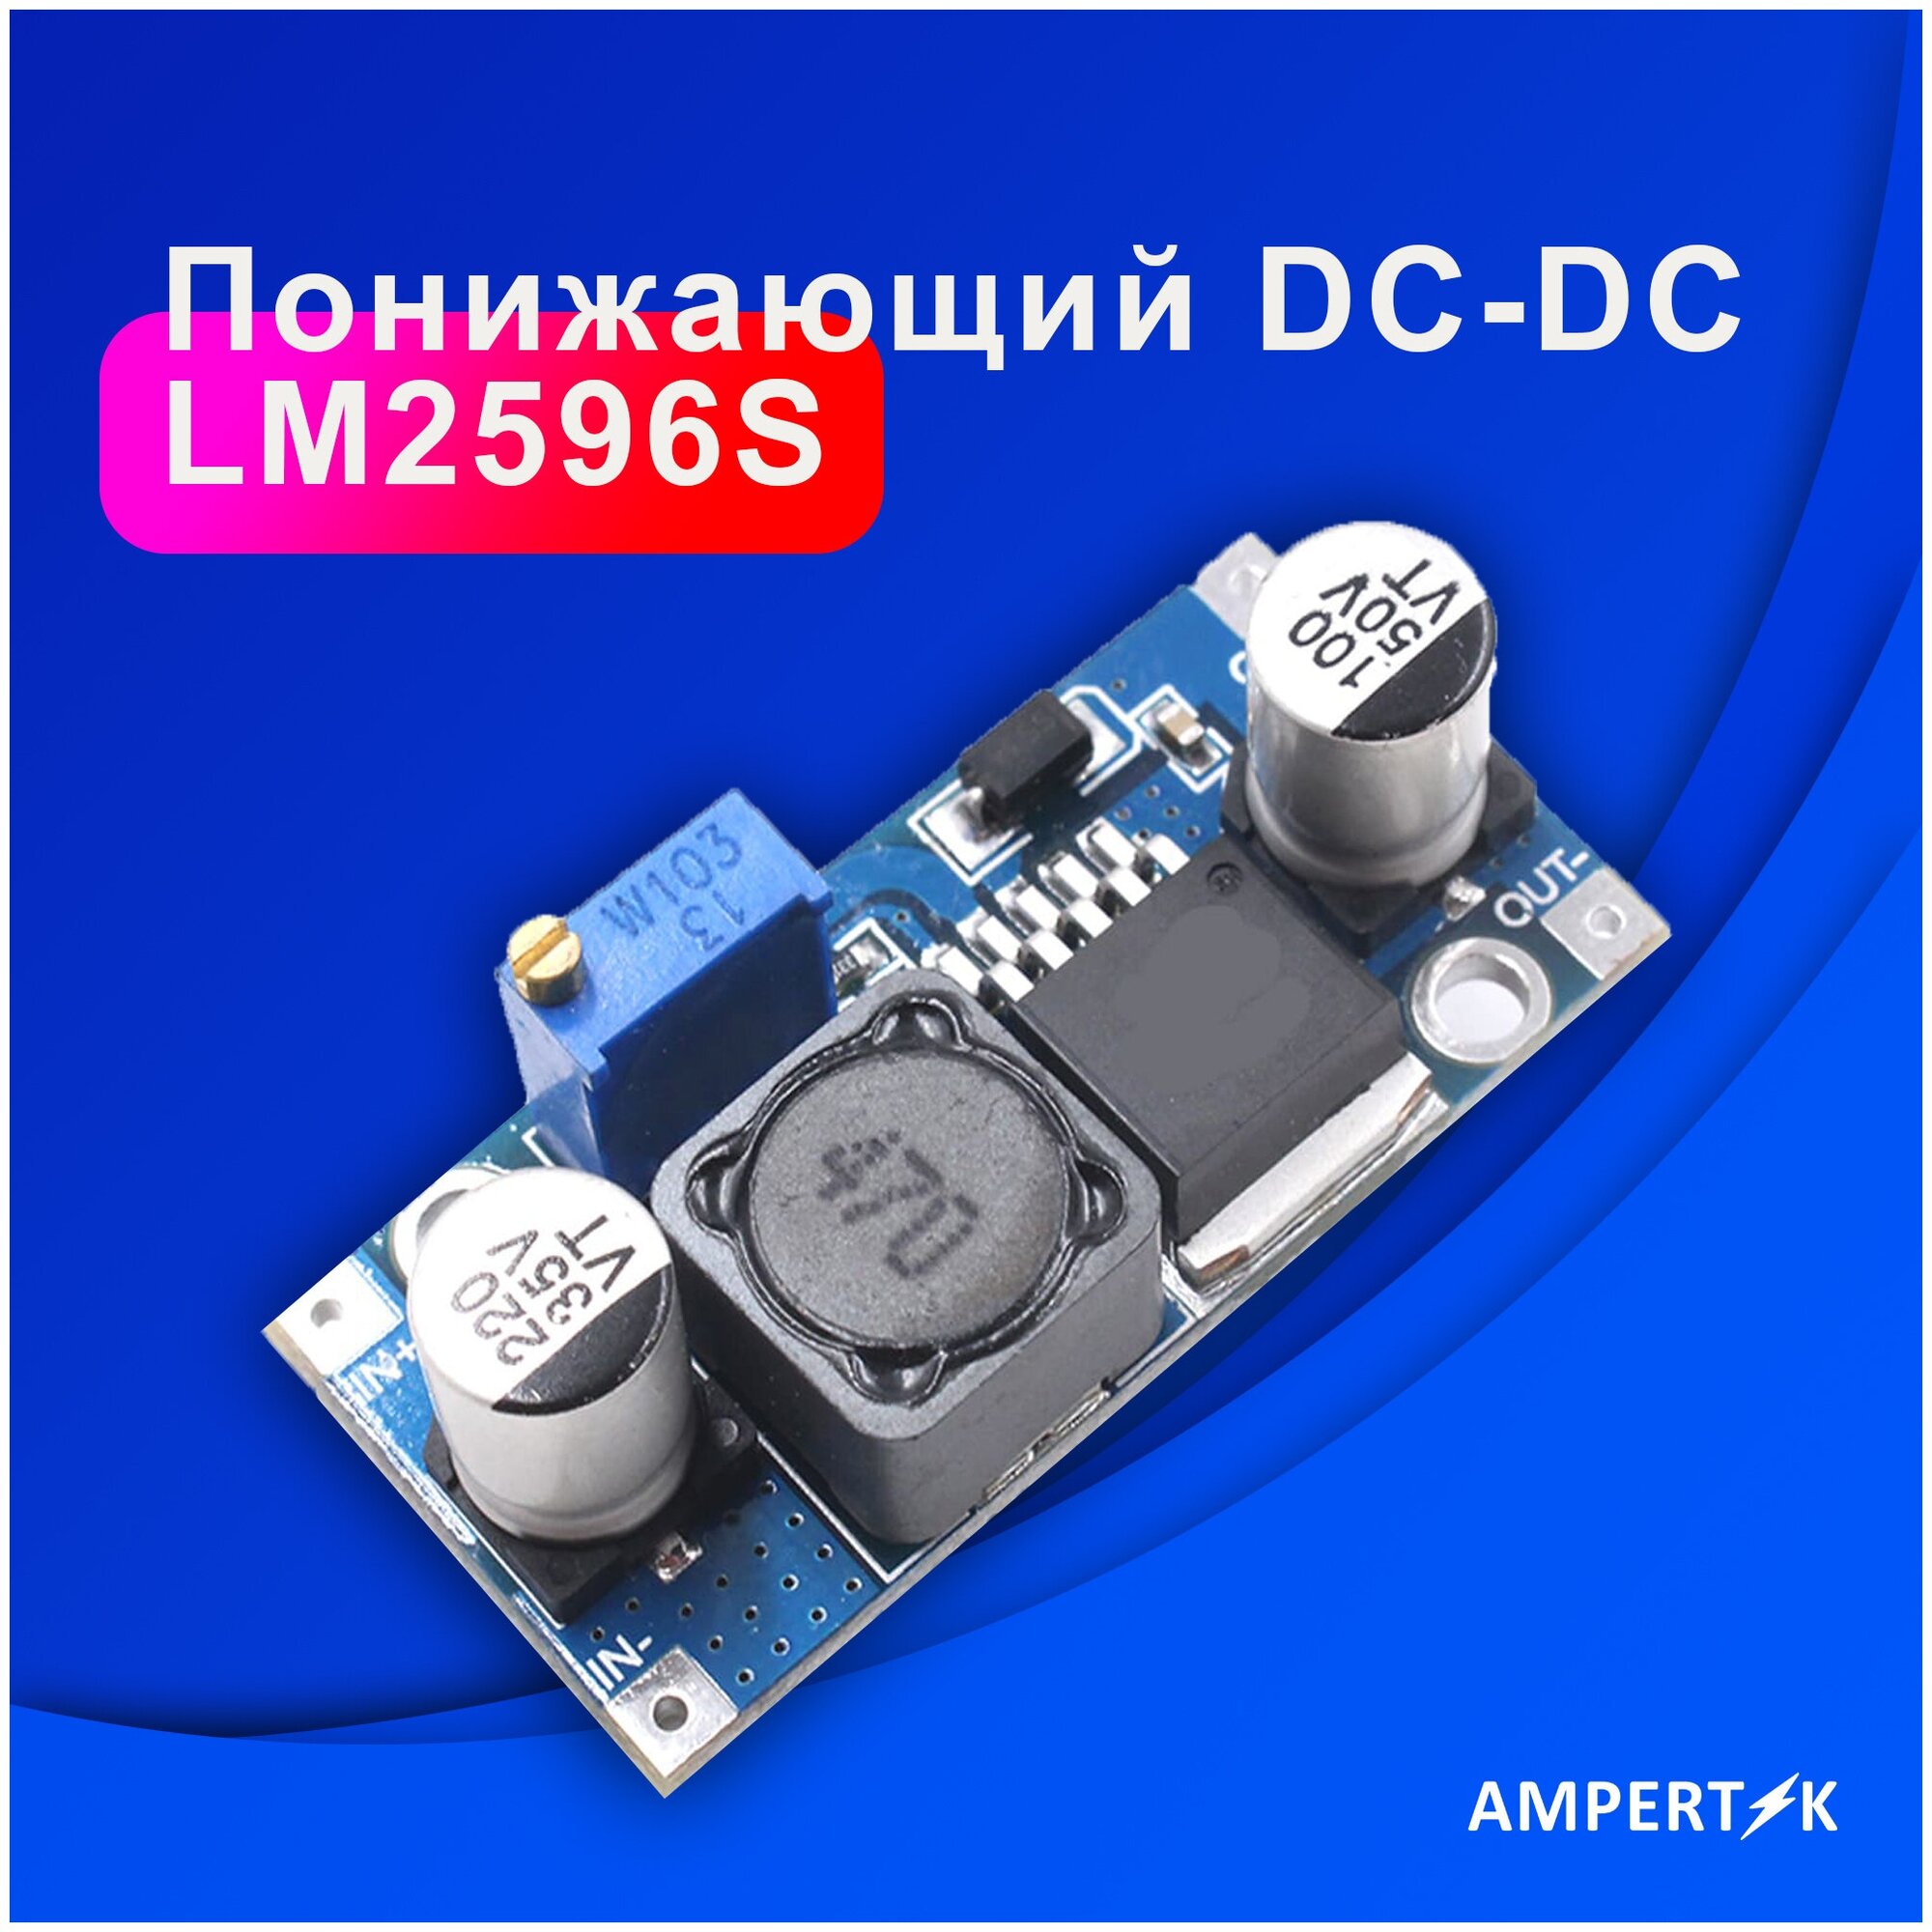 Понижающий DC-DC преобразователь Ampertok LM2596S